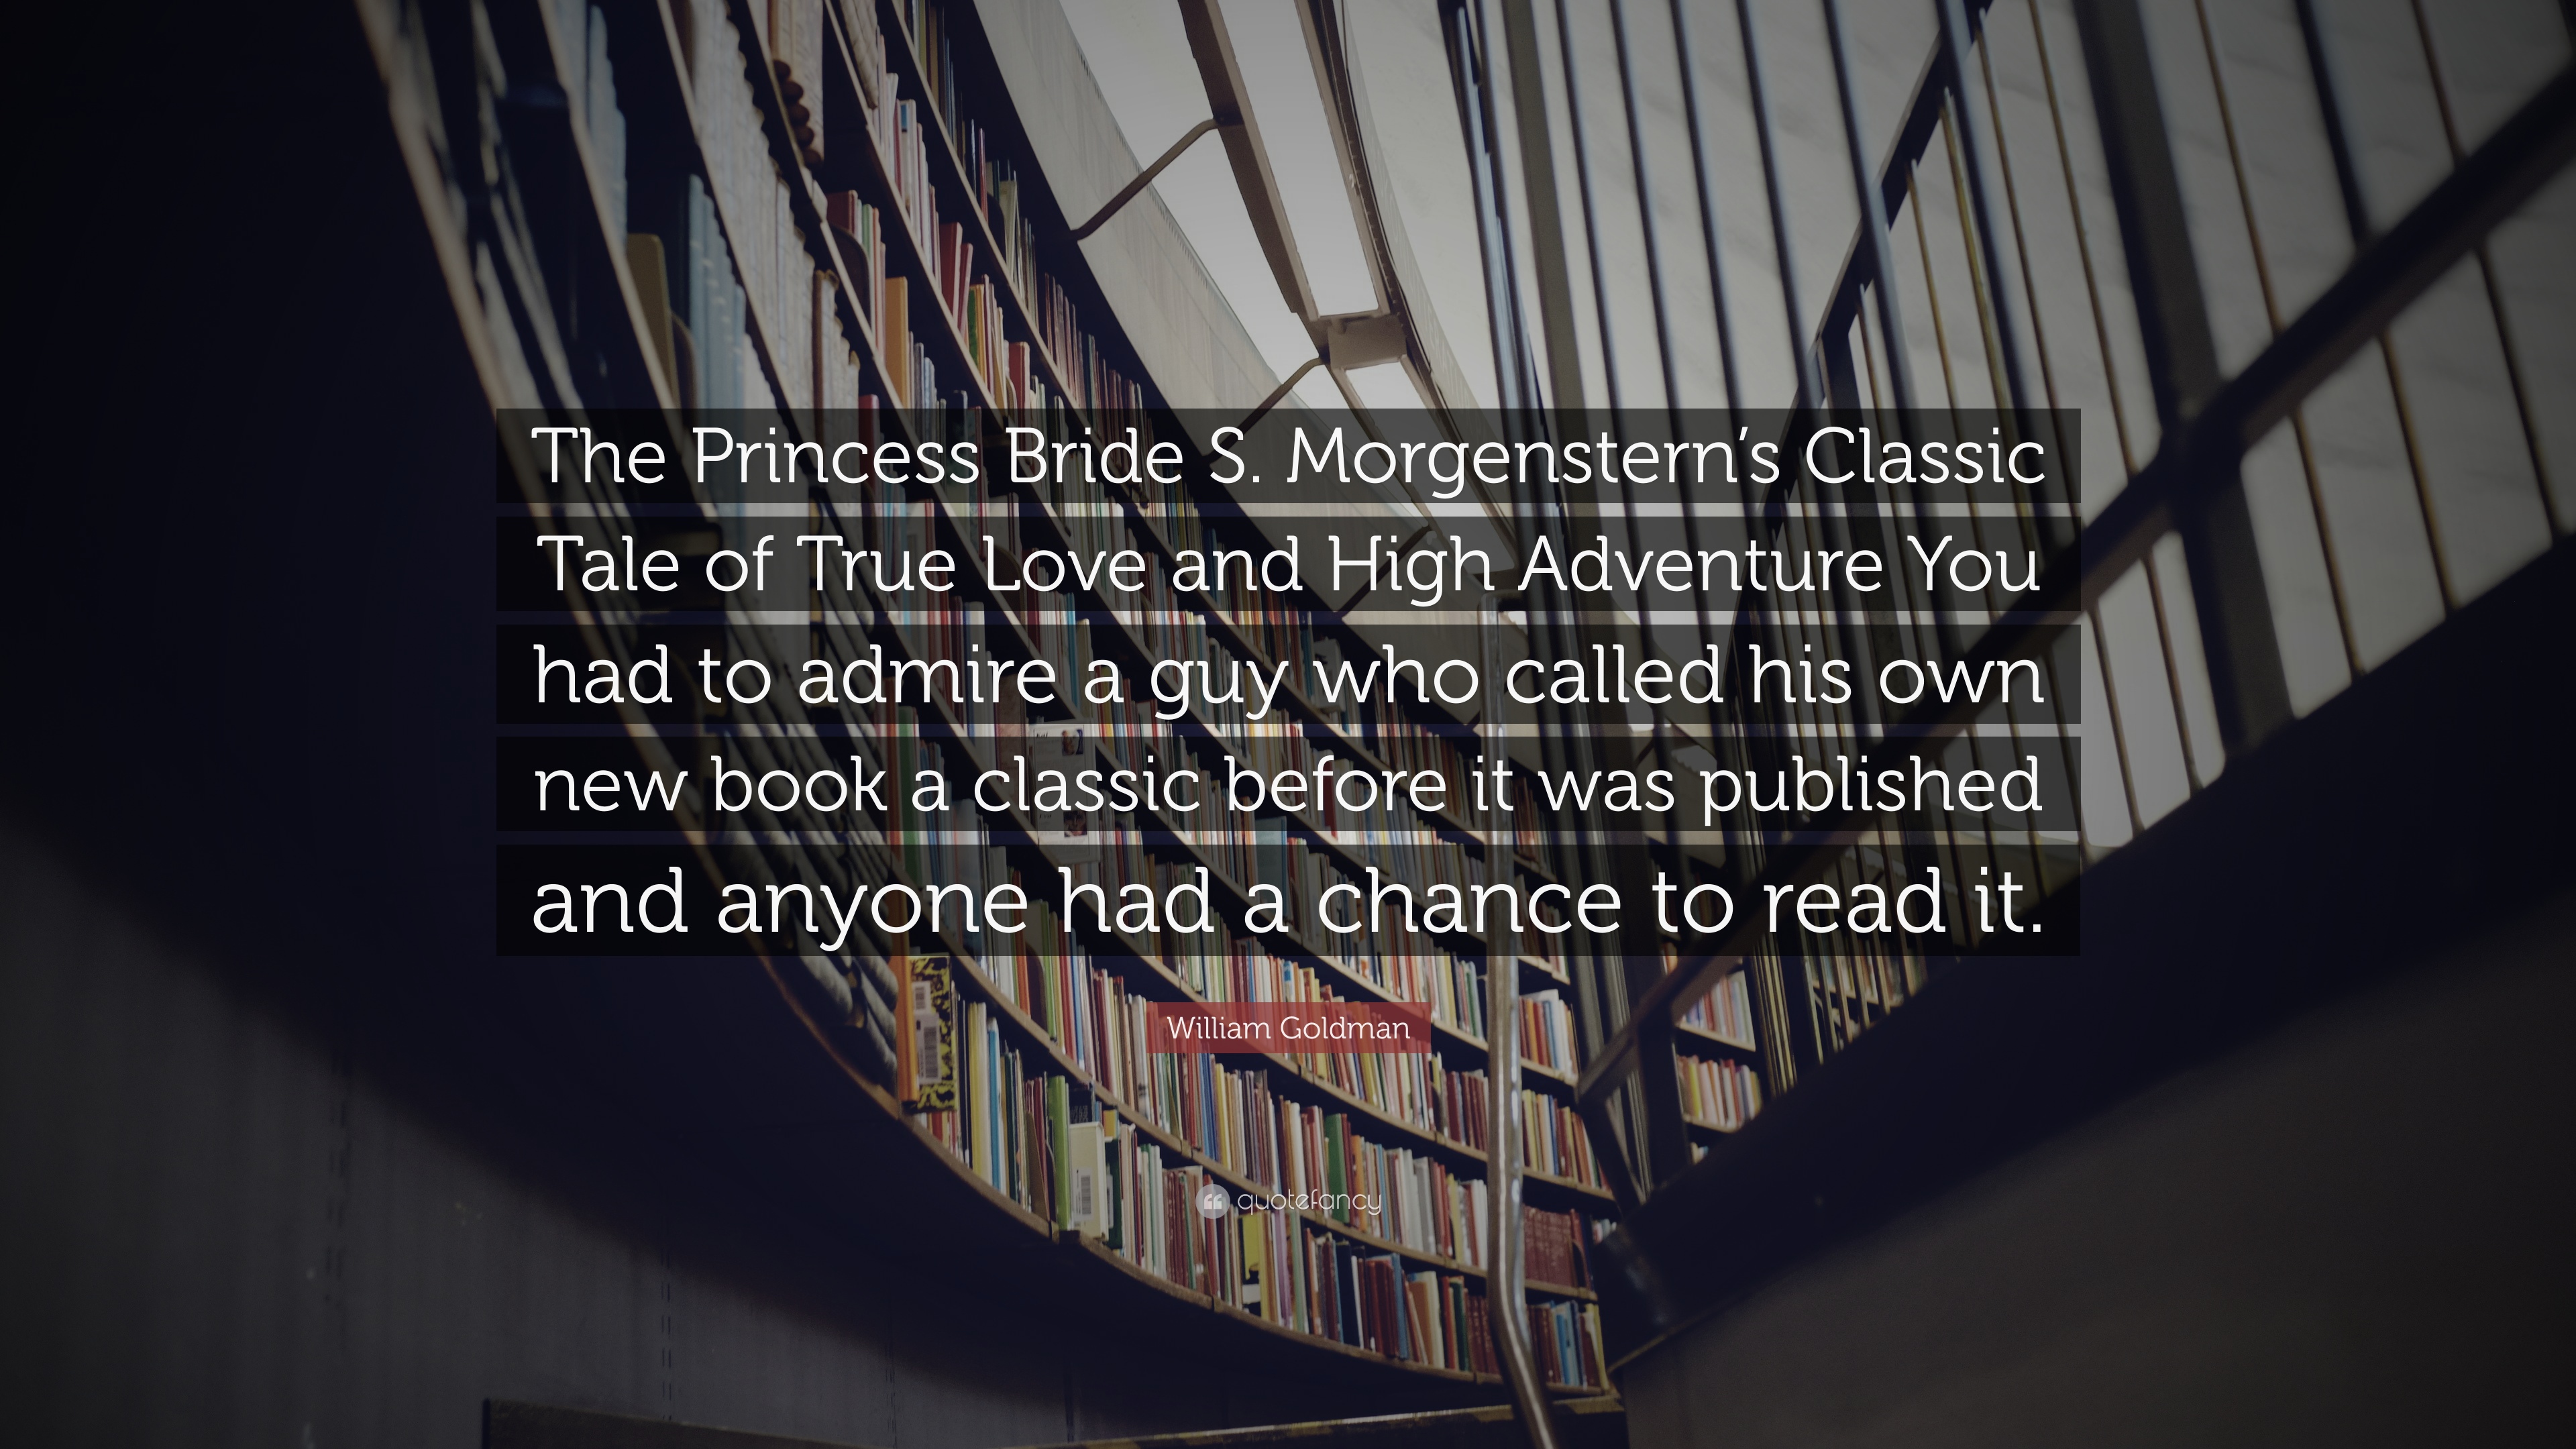 William Goldman Quote: “The Princess Bride S. Morgenstern's Classic